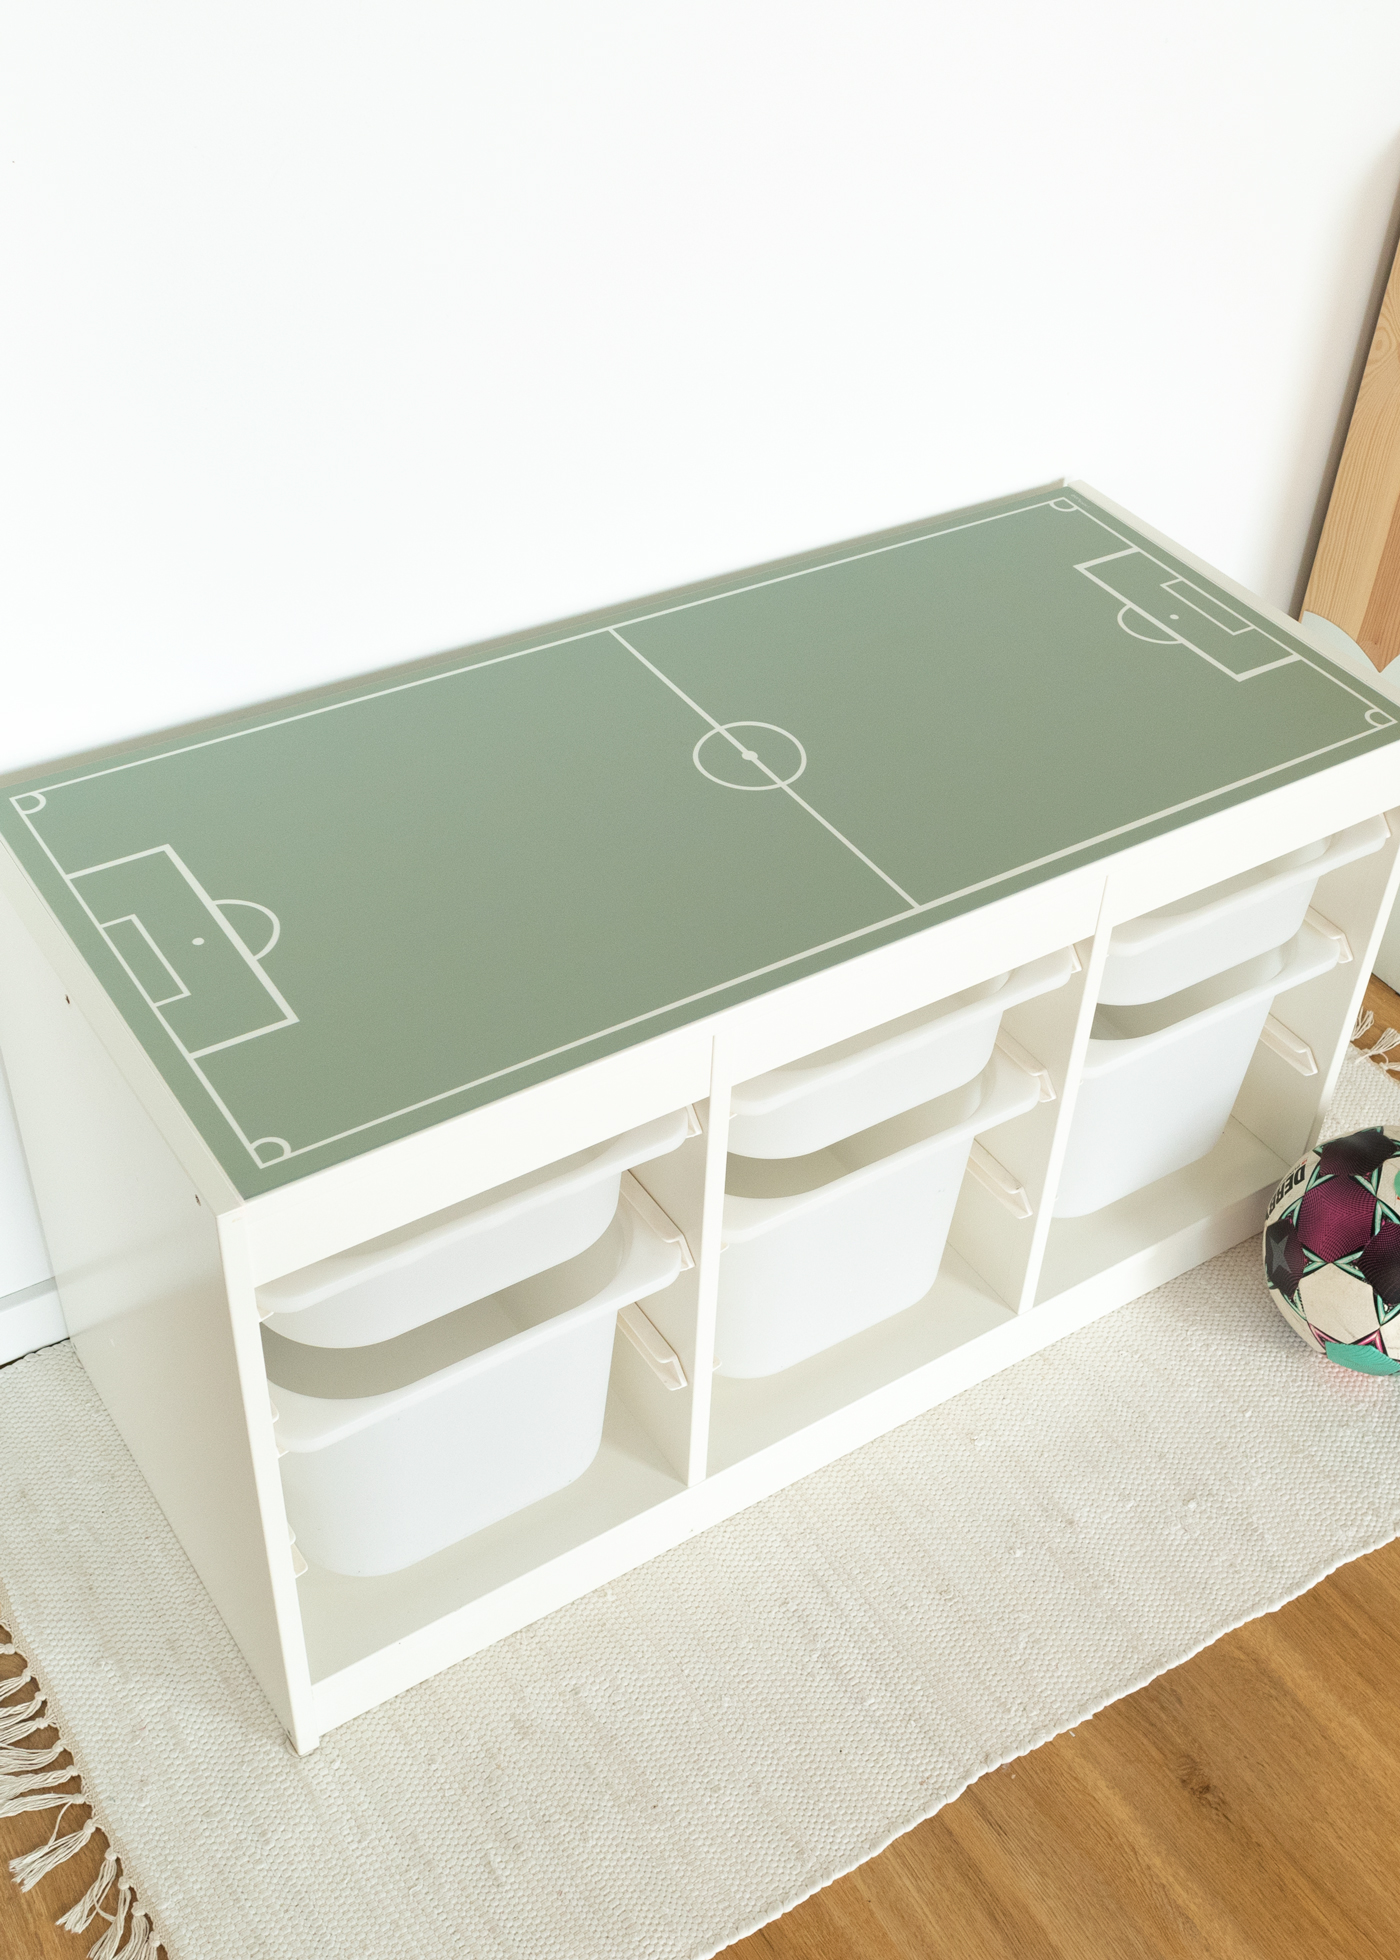 Ikea Trofast Klebefolie als Fußball Deko für dein Fußball Kinderzimmer als Fußballzimmer Deko mit Fußballmotiven passend für die Fußball EM